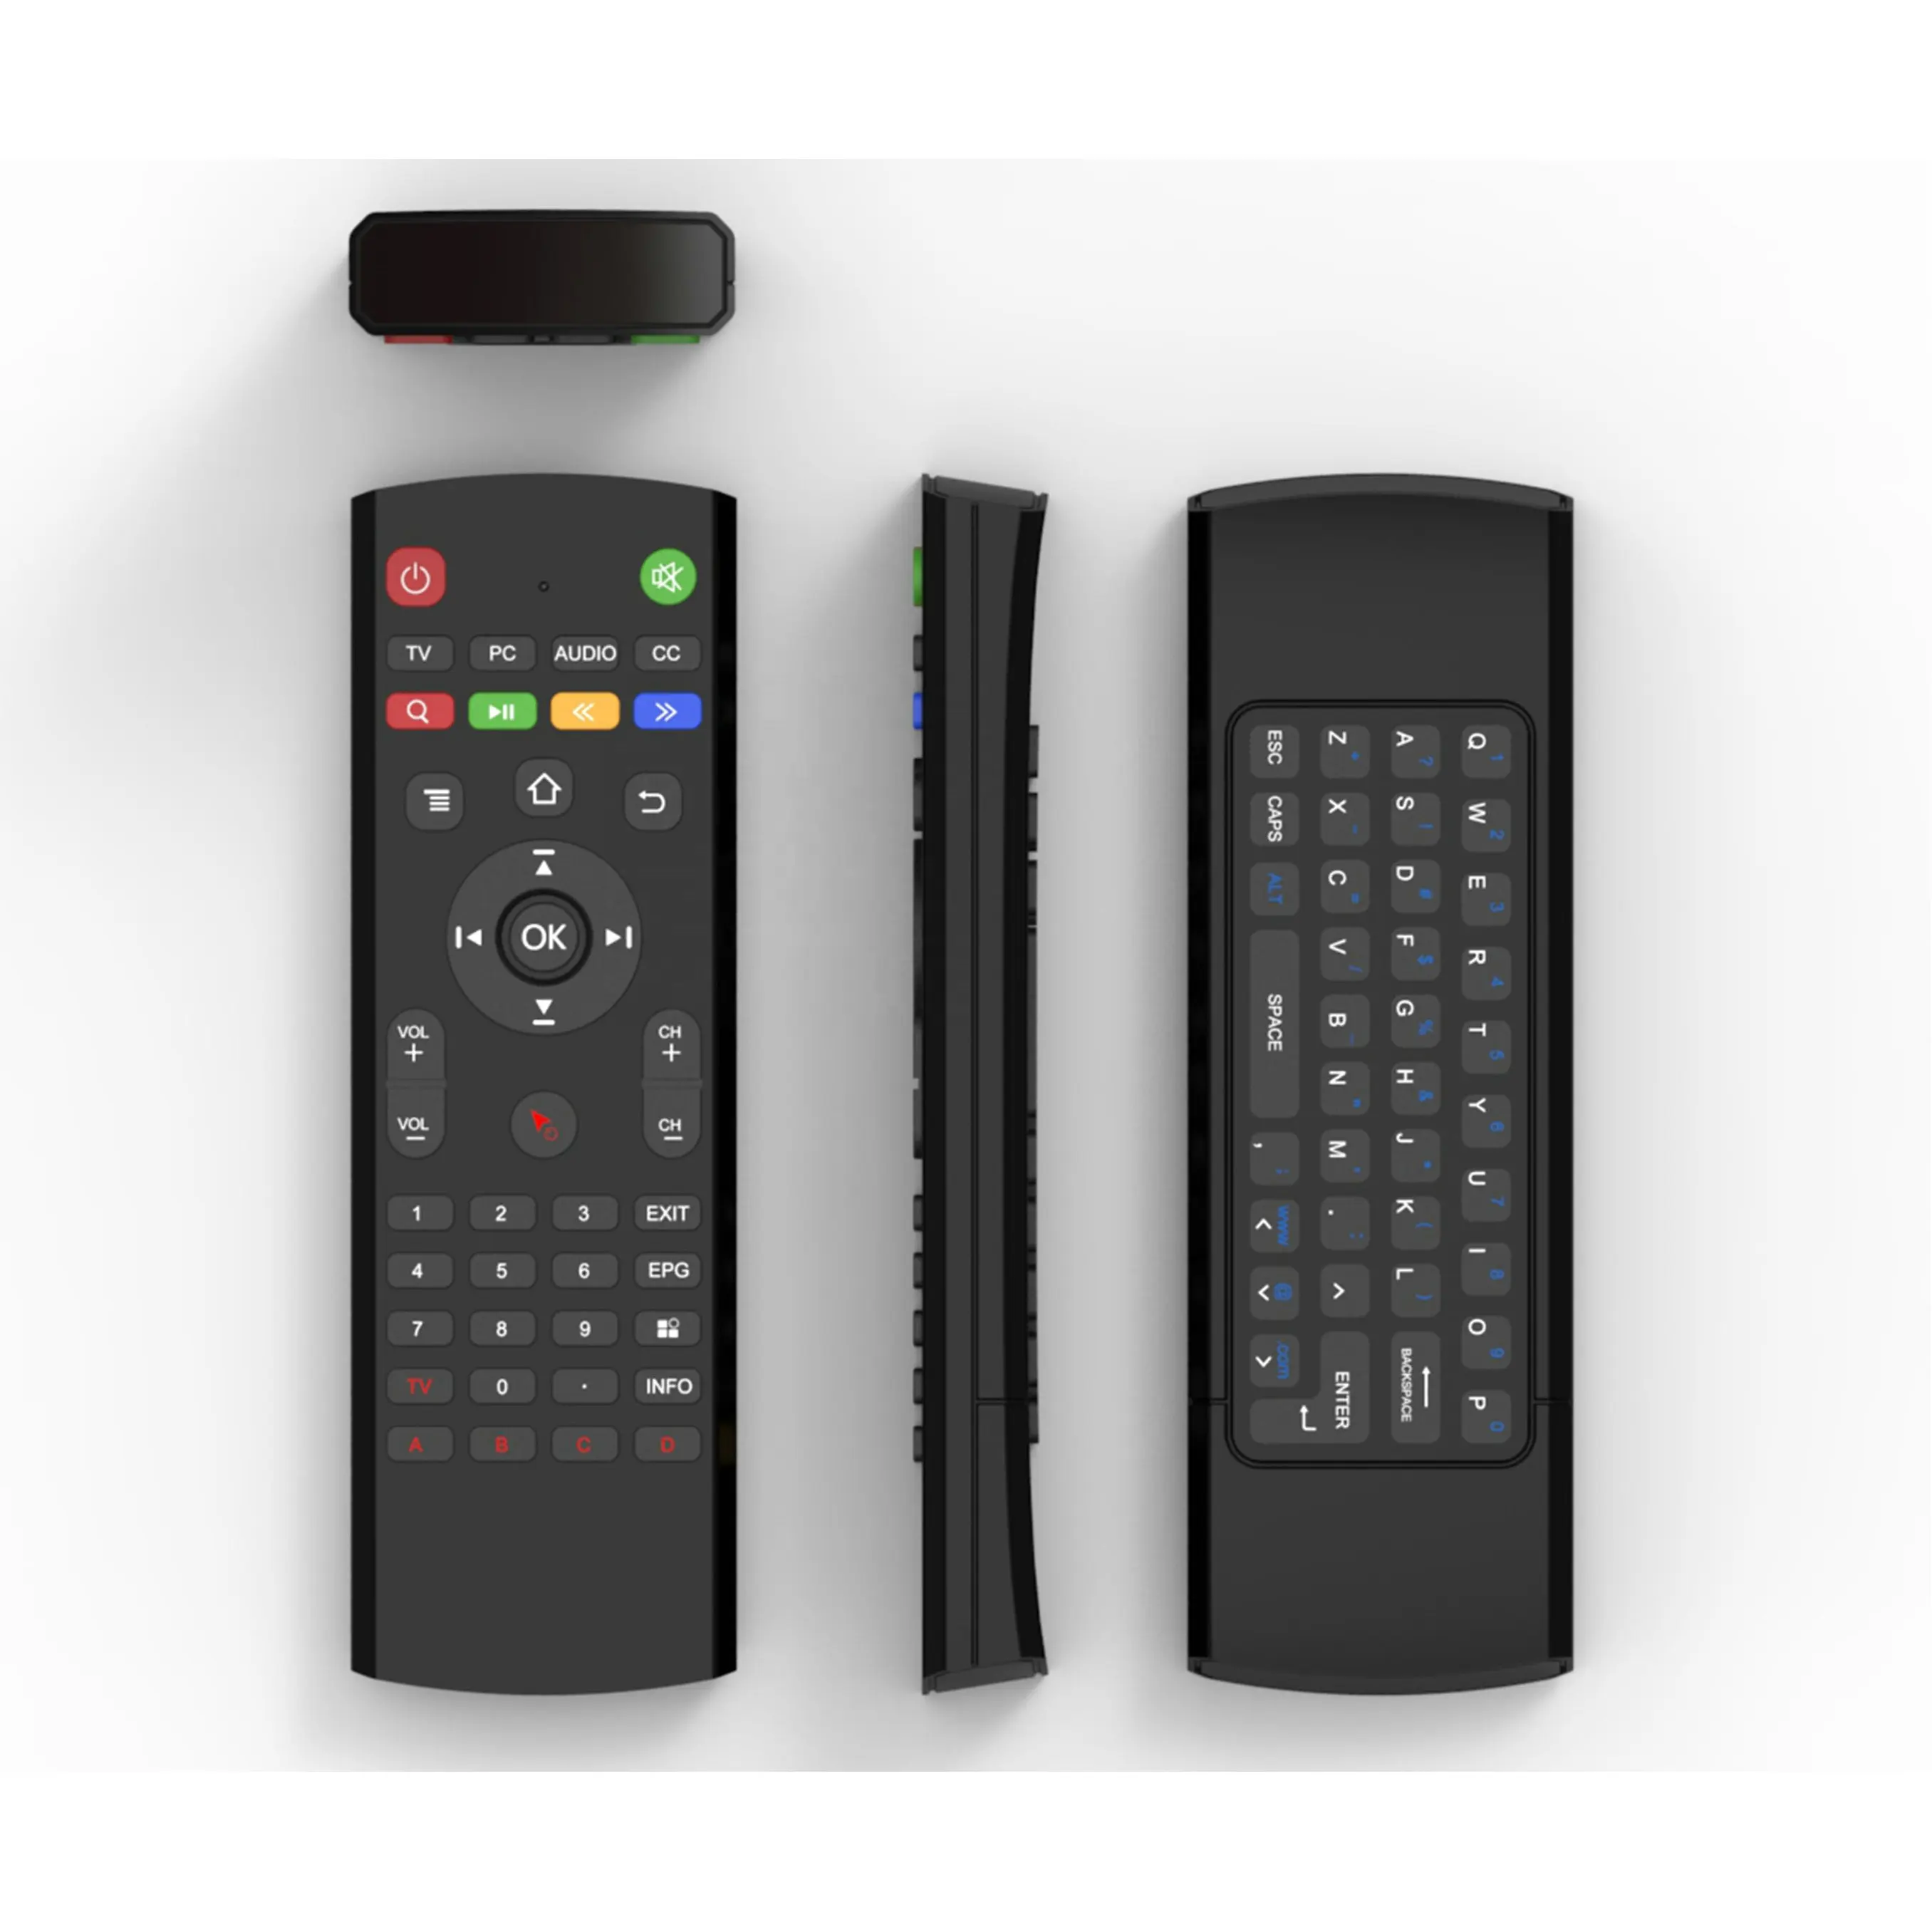 Telecomando universale USB 2.4GHz air mouse con tastiera Qwenty per telecomando tastiera Android TV ble